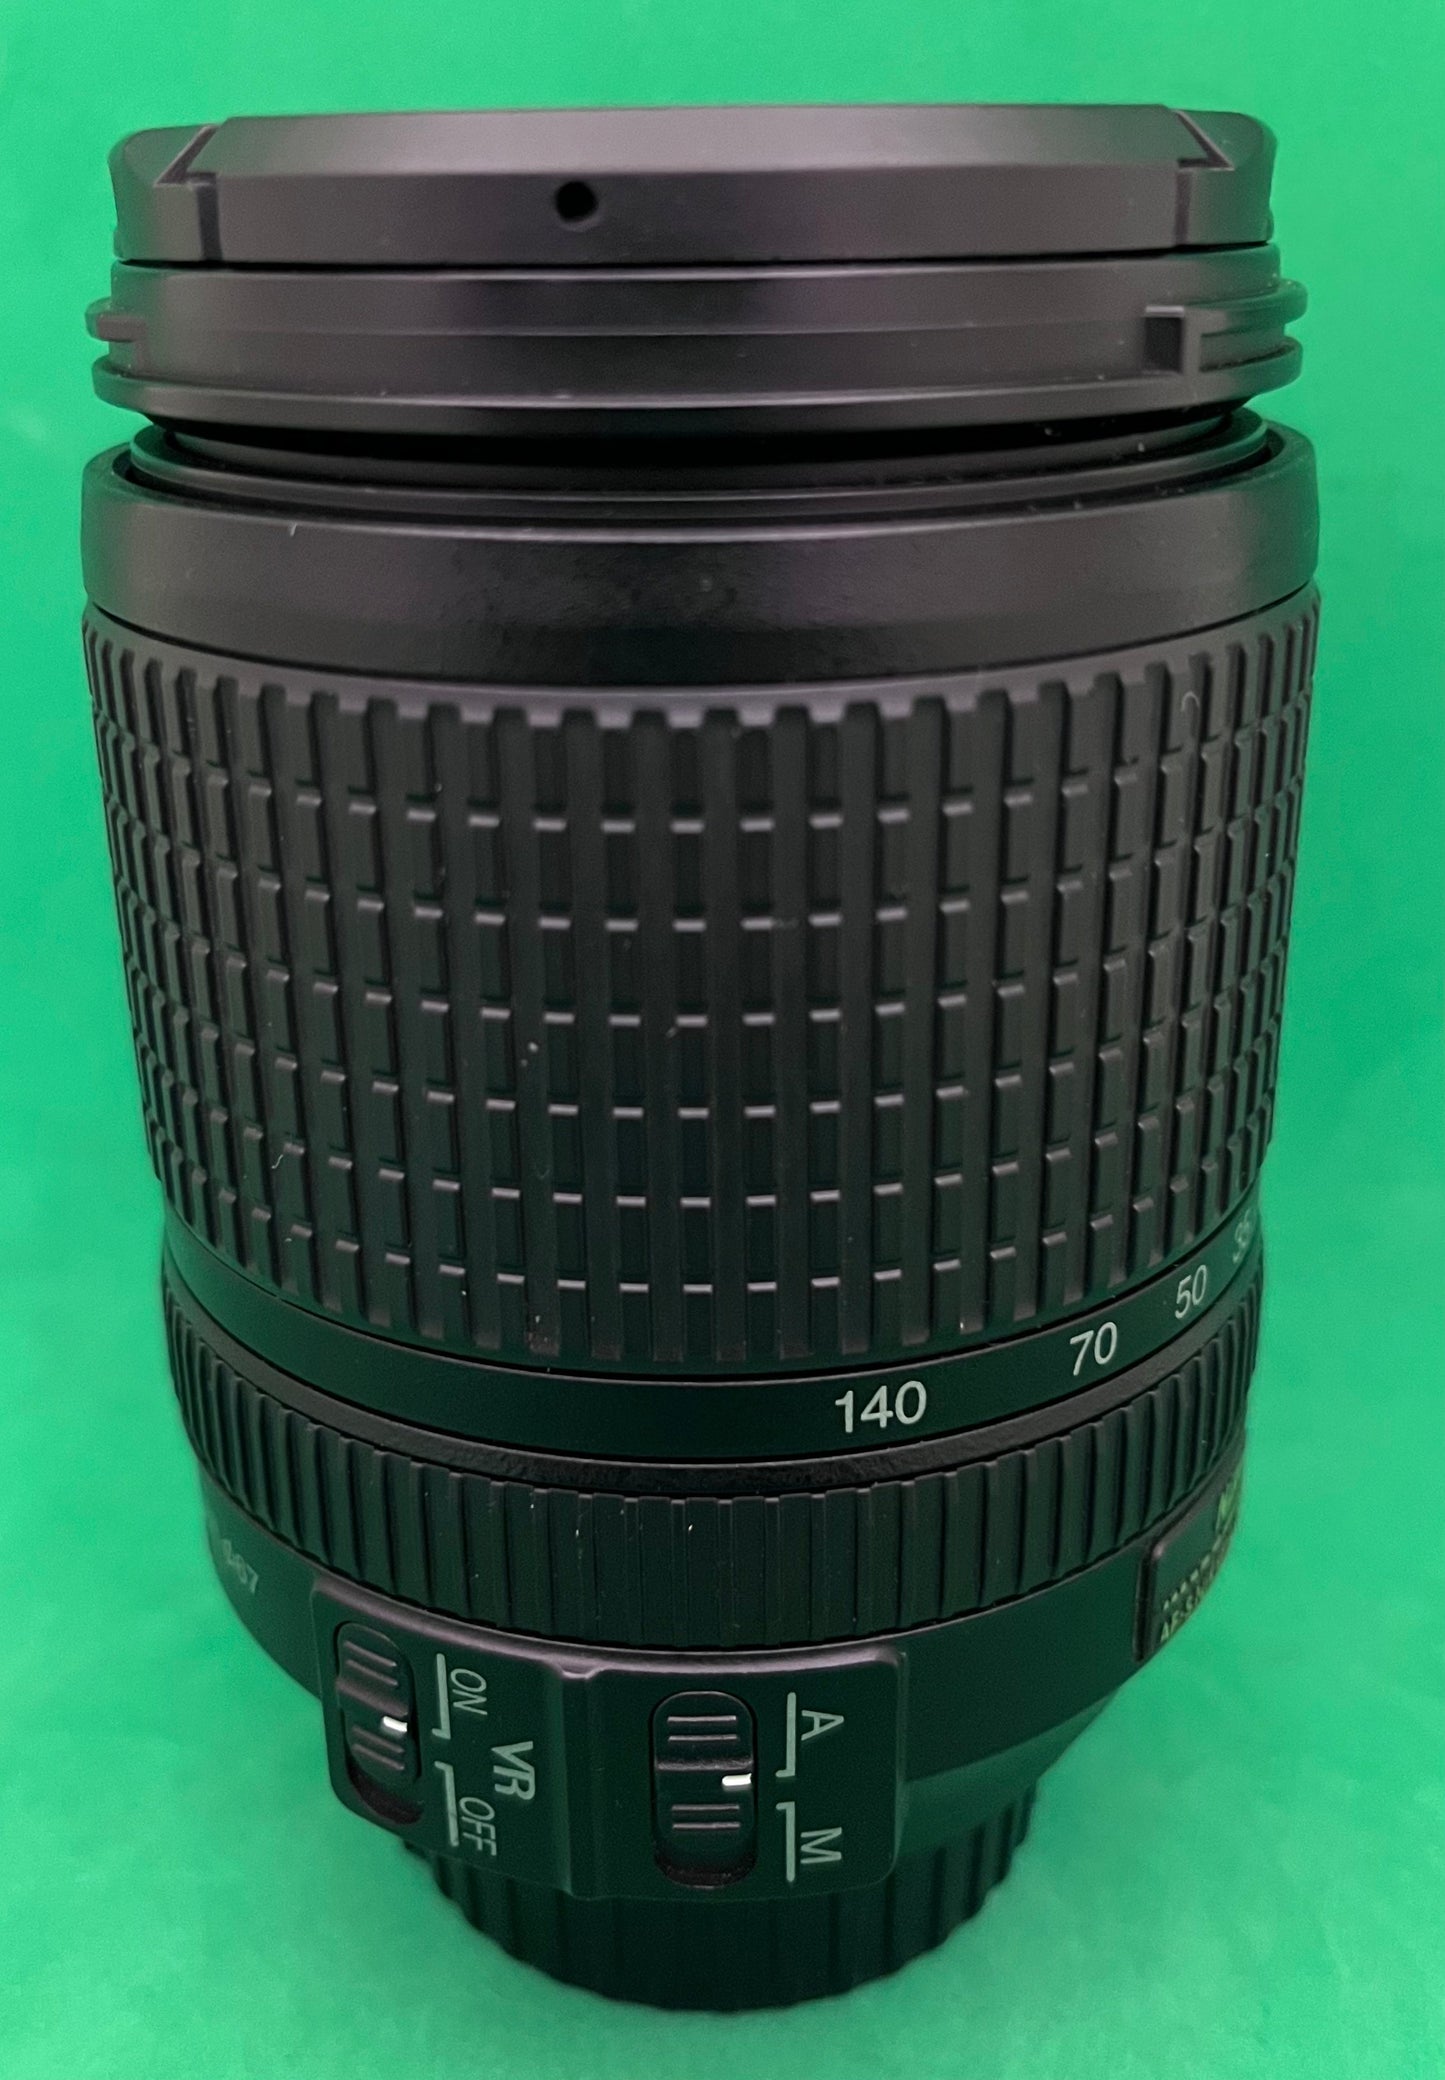 Nikon AF-S 18-140mm f/3.5-5.6 G ED DX VR Lense (USED)